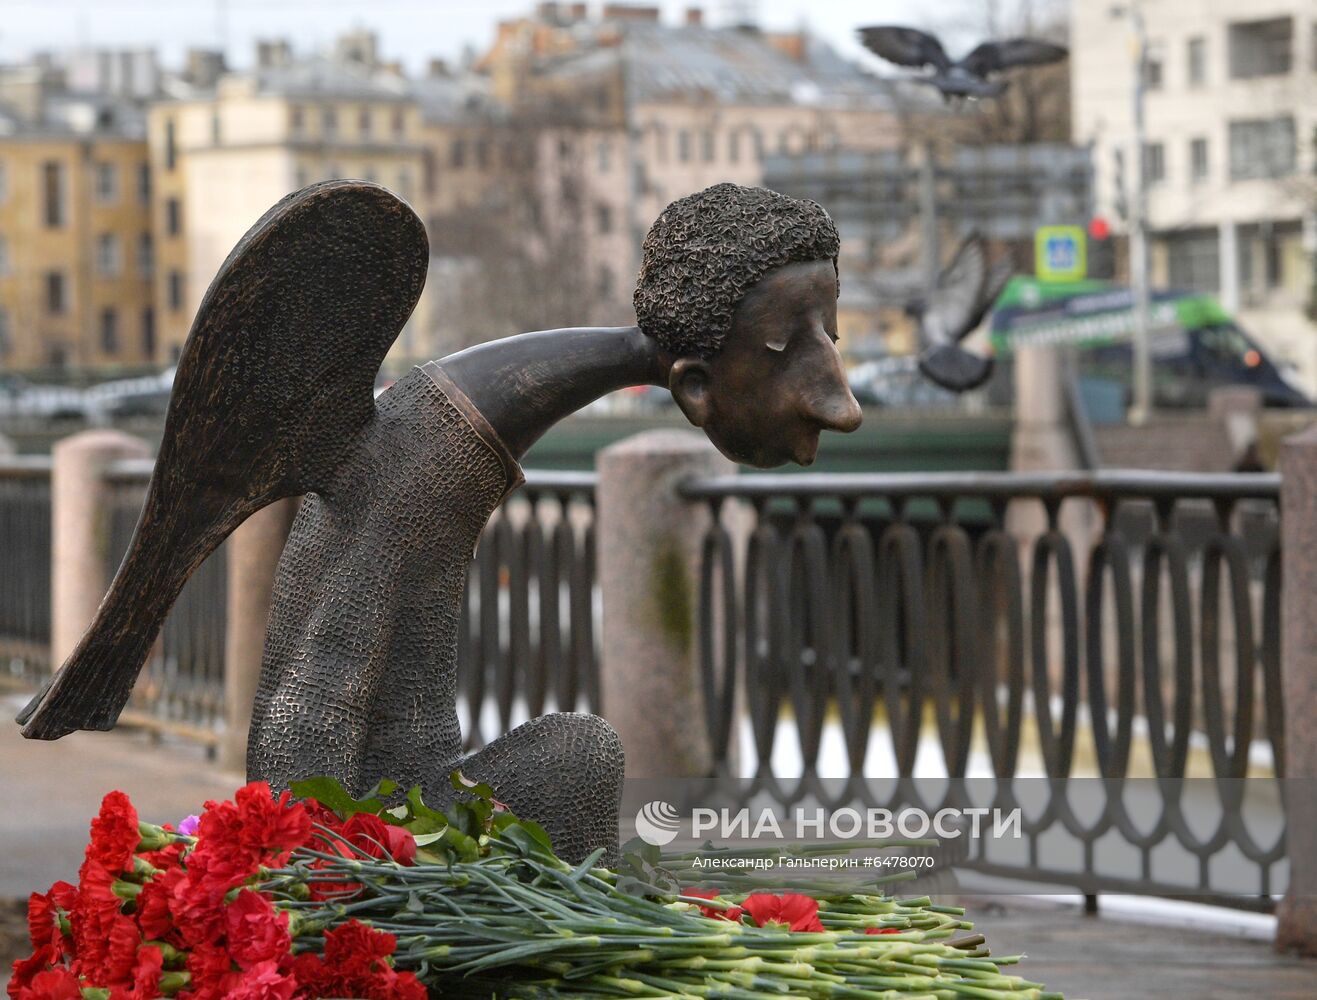 Памятник врачам "Печальный ангел" в Санкт-Петербурге